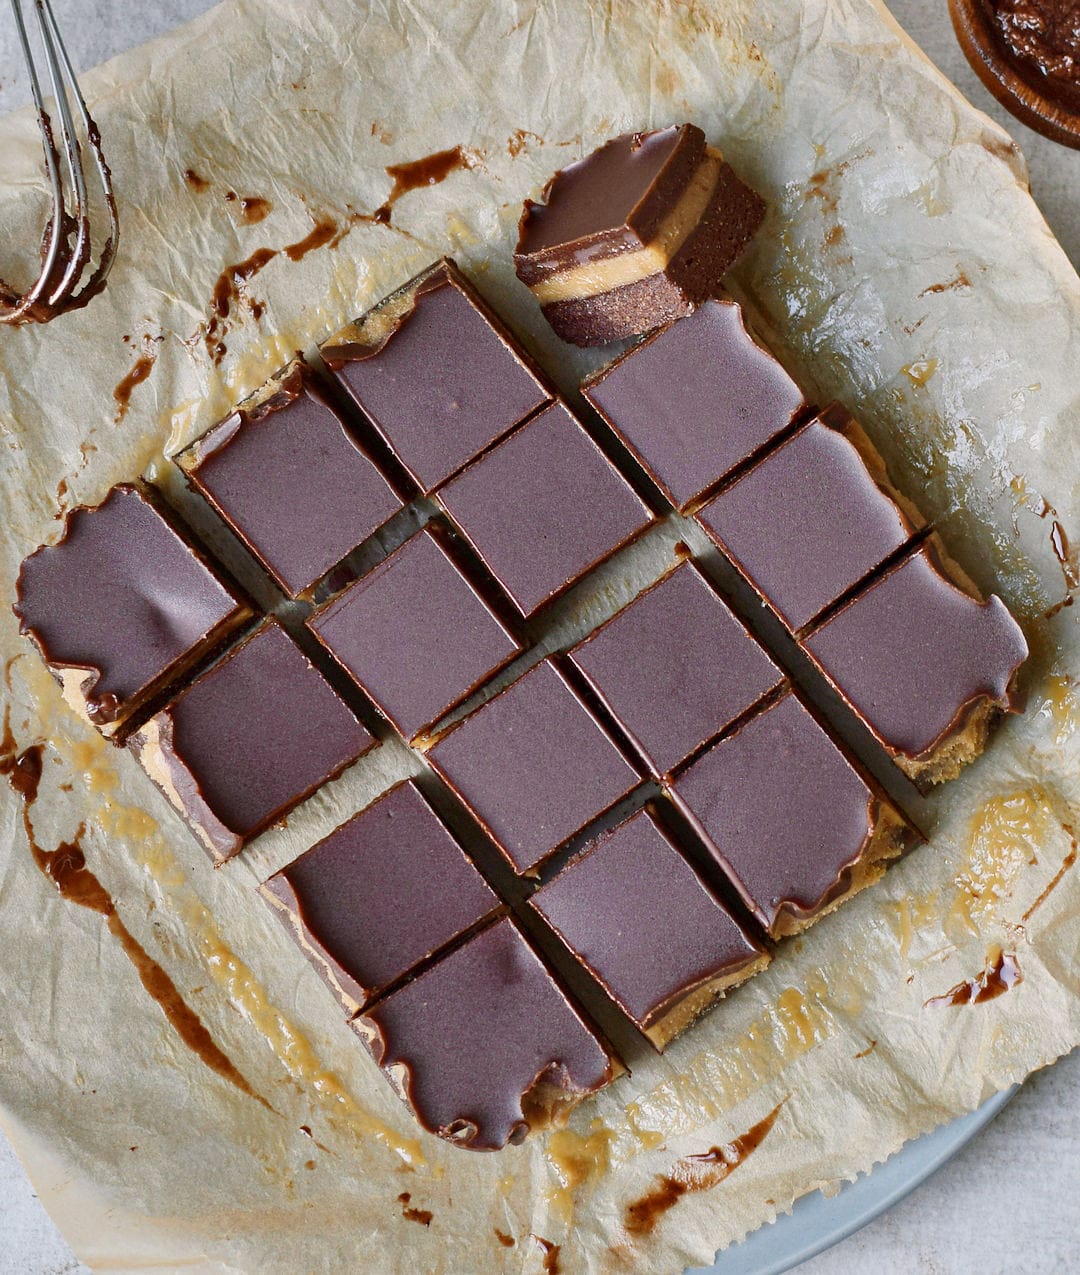 16 Karamell Brownies mit Schokolade von oben